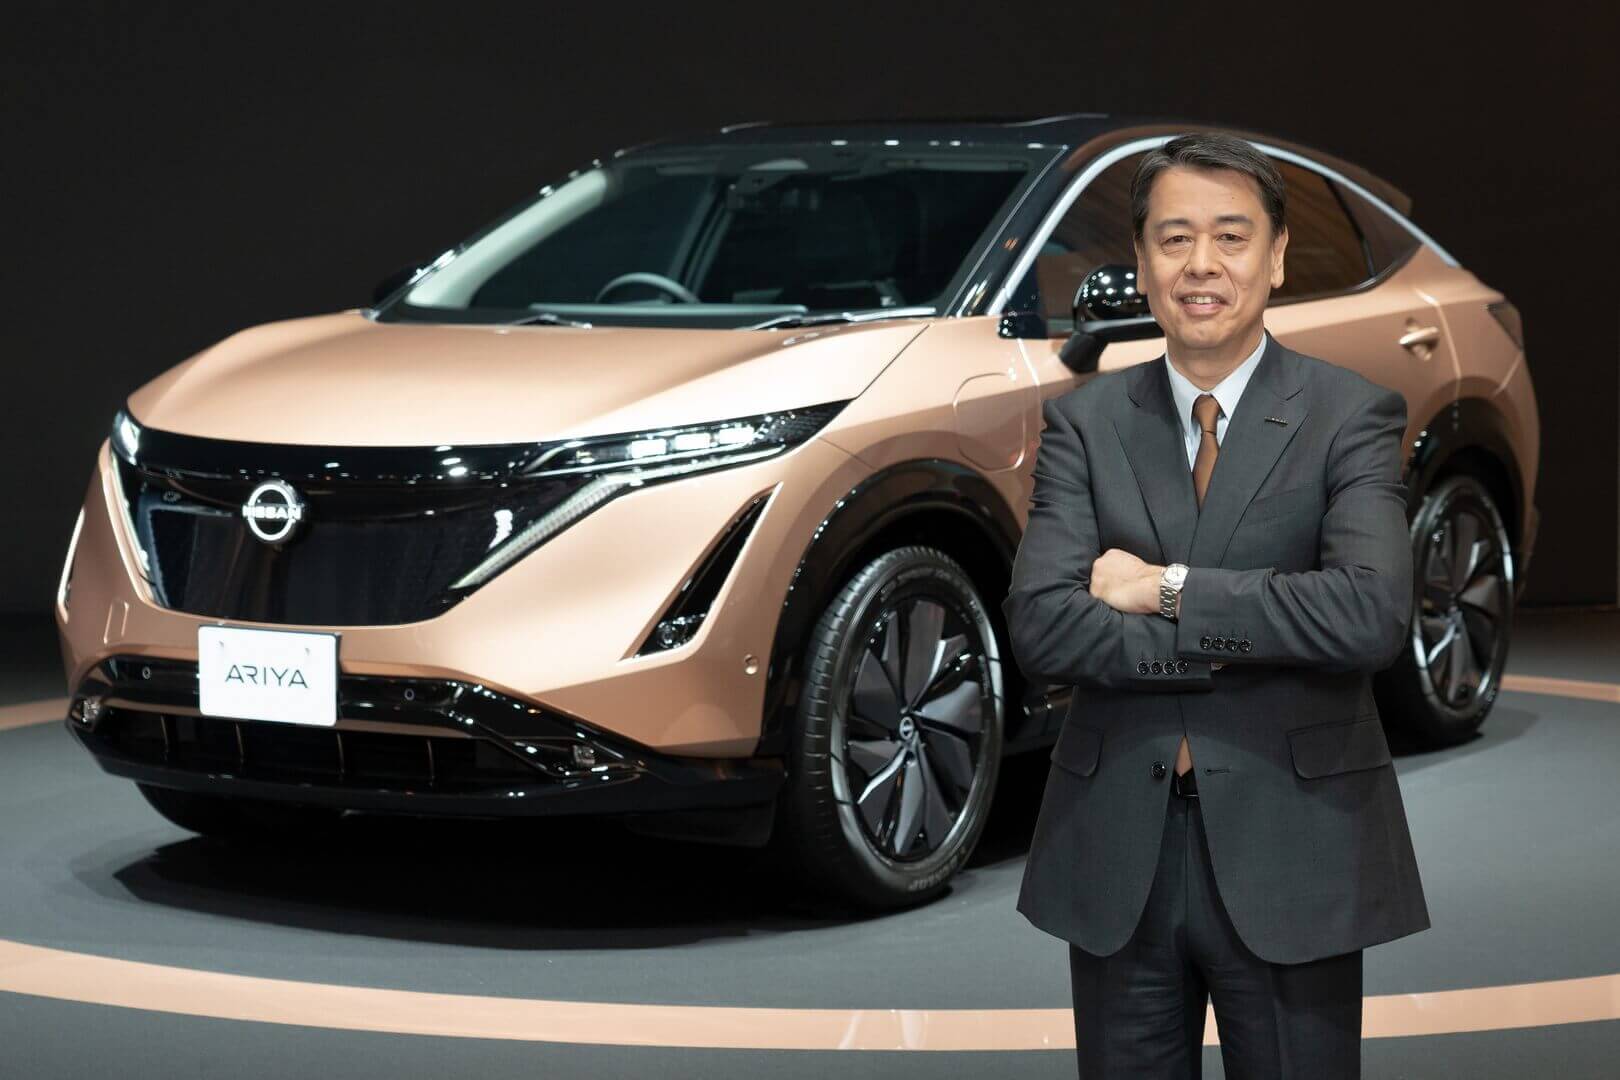 К 2030 году Nissan представит 23 новые электрифицированные модели, включая 15 электромобилей